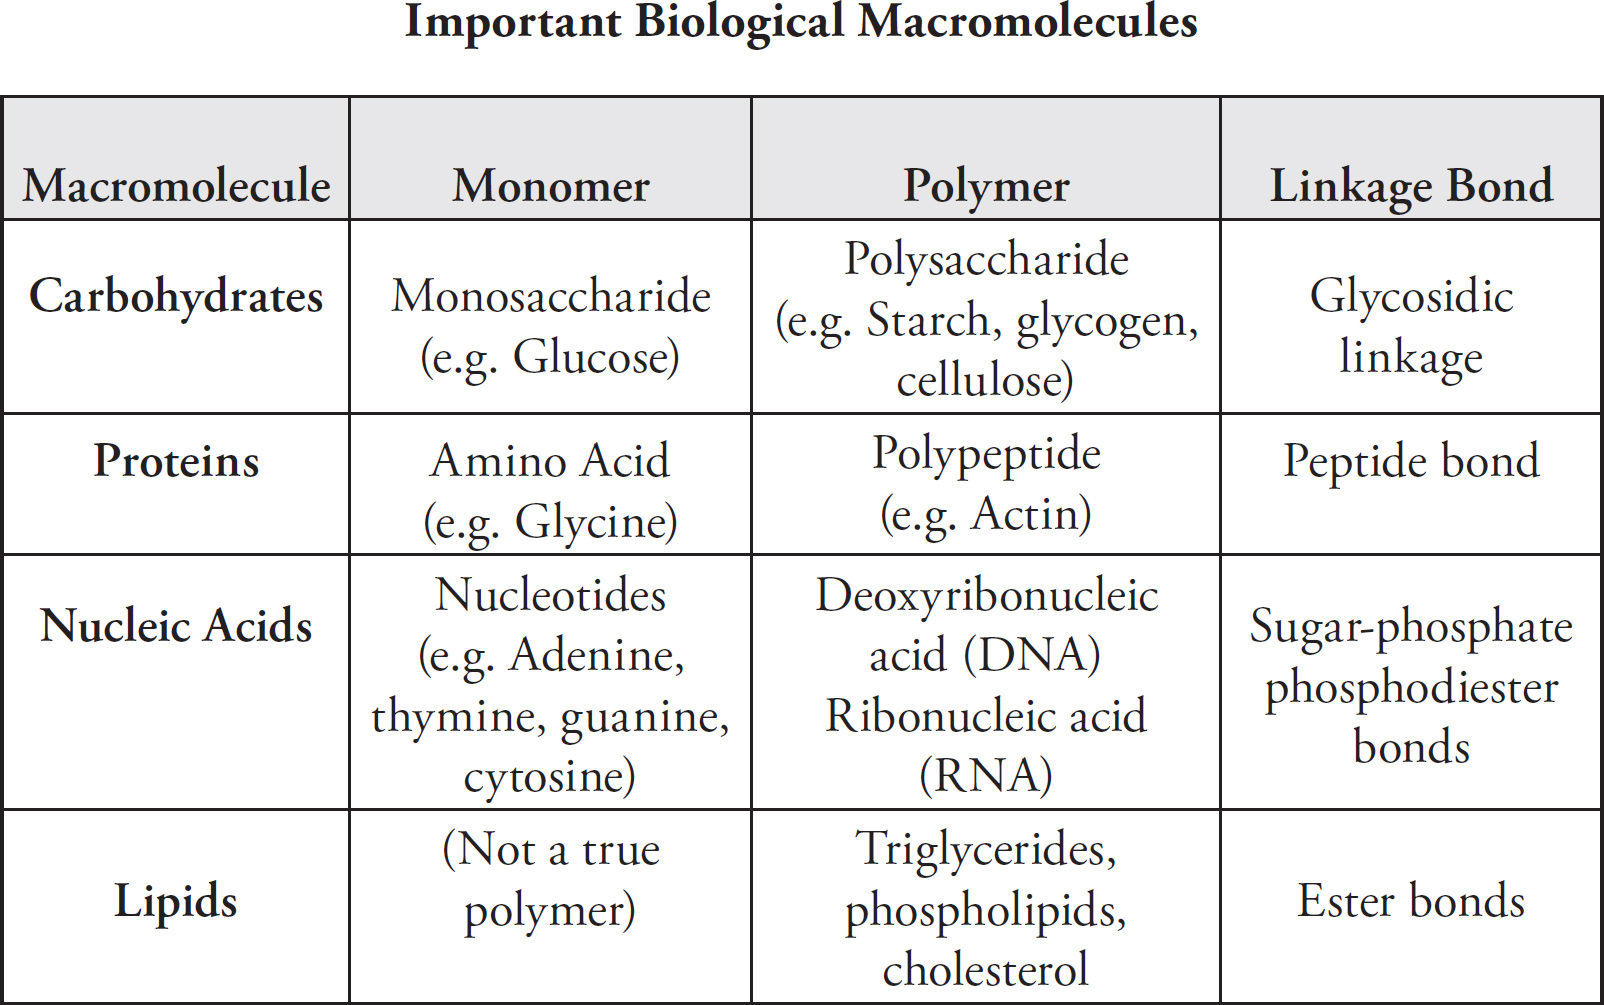 Biological macromolecules